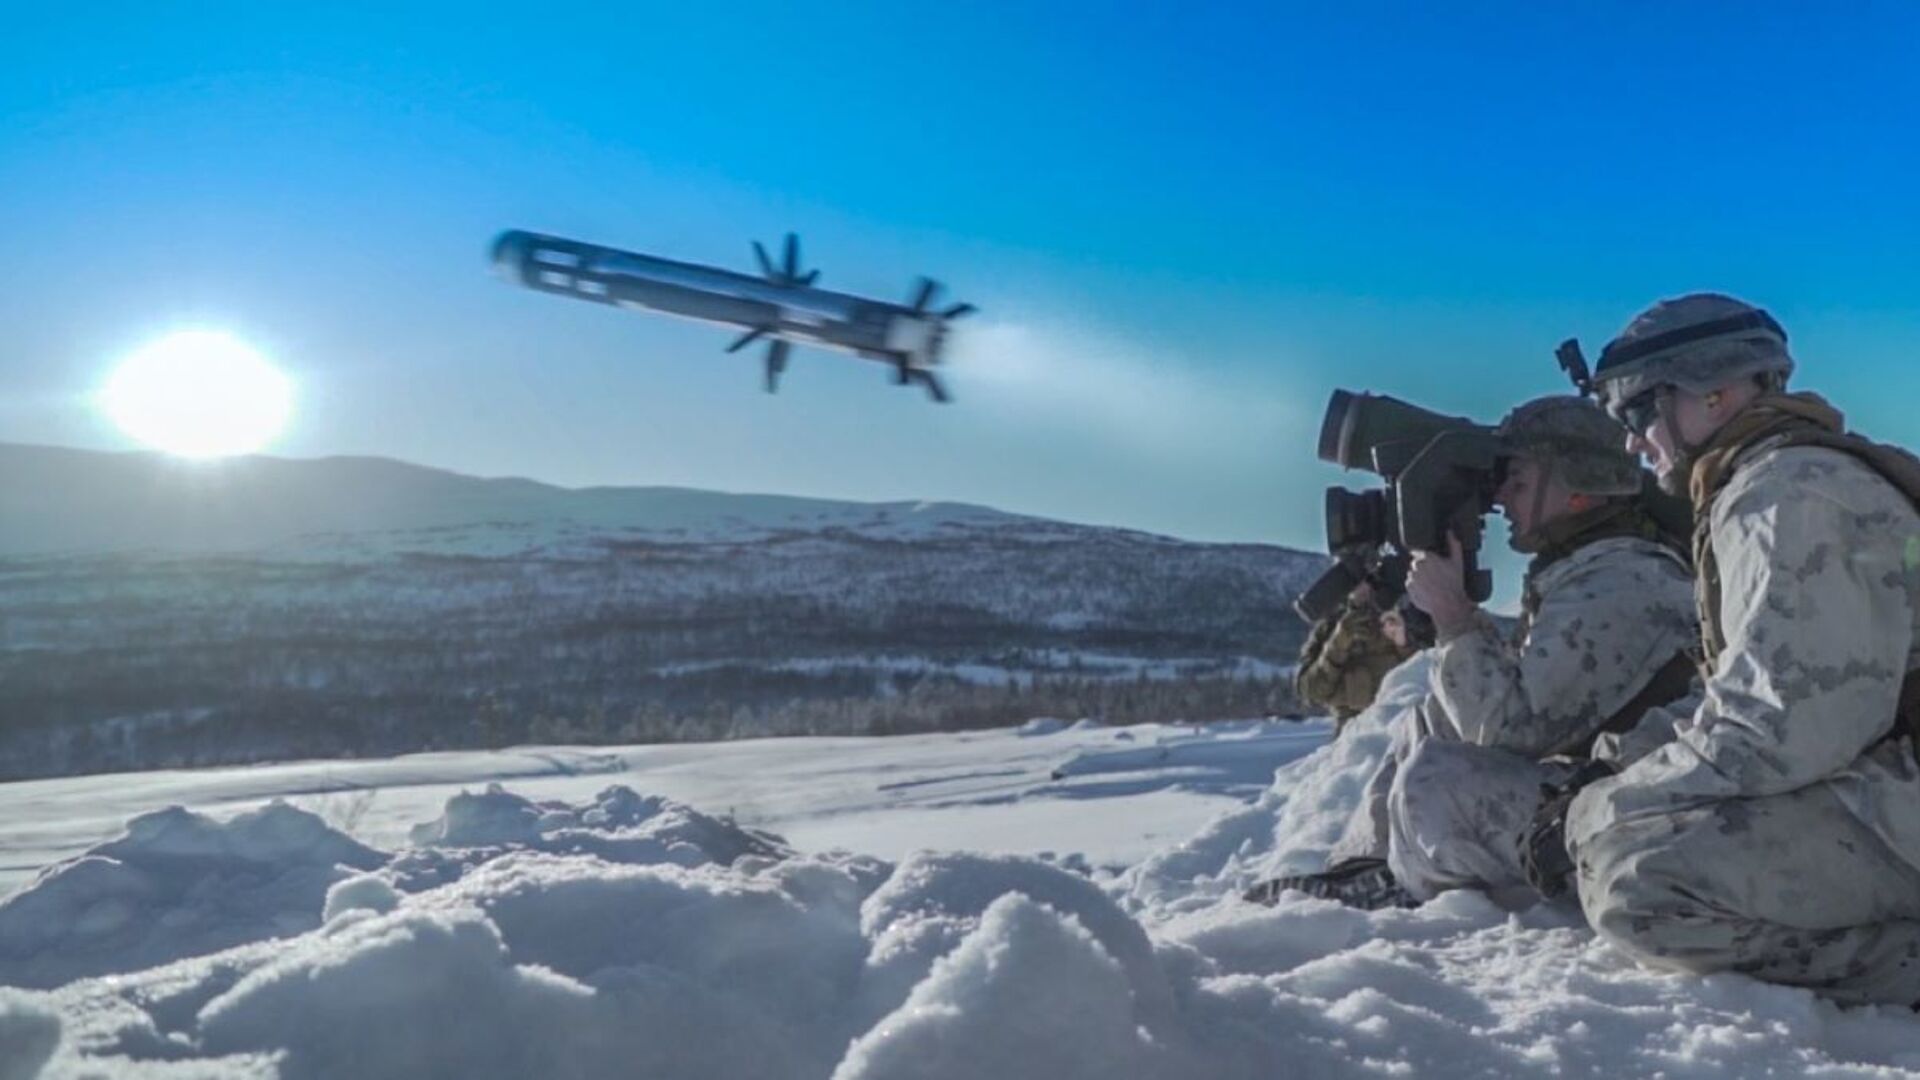 Американский военнослужащий производит выстрел из противотанкового ракетного комплекса (ПТРК) Javelin во время учений Cold Response 2020 в Норвегии - Sputnik Latvija, 1920, 17.03.2022